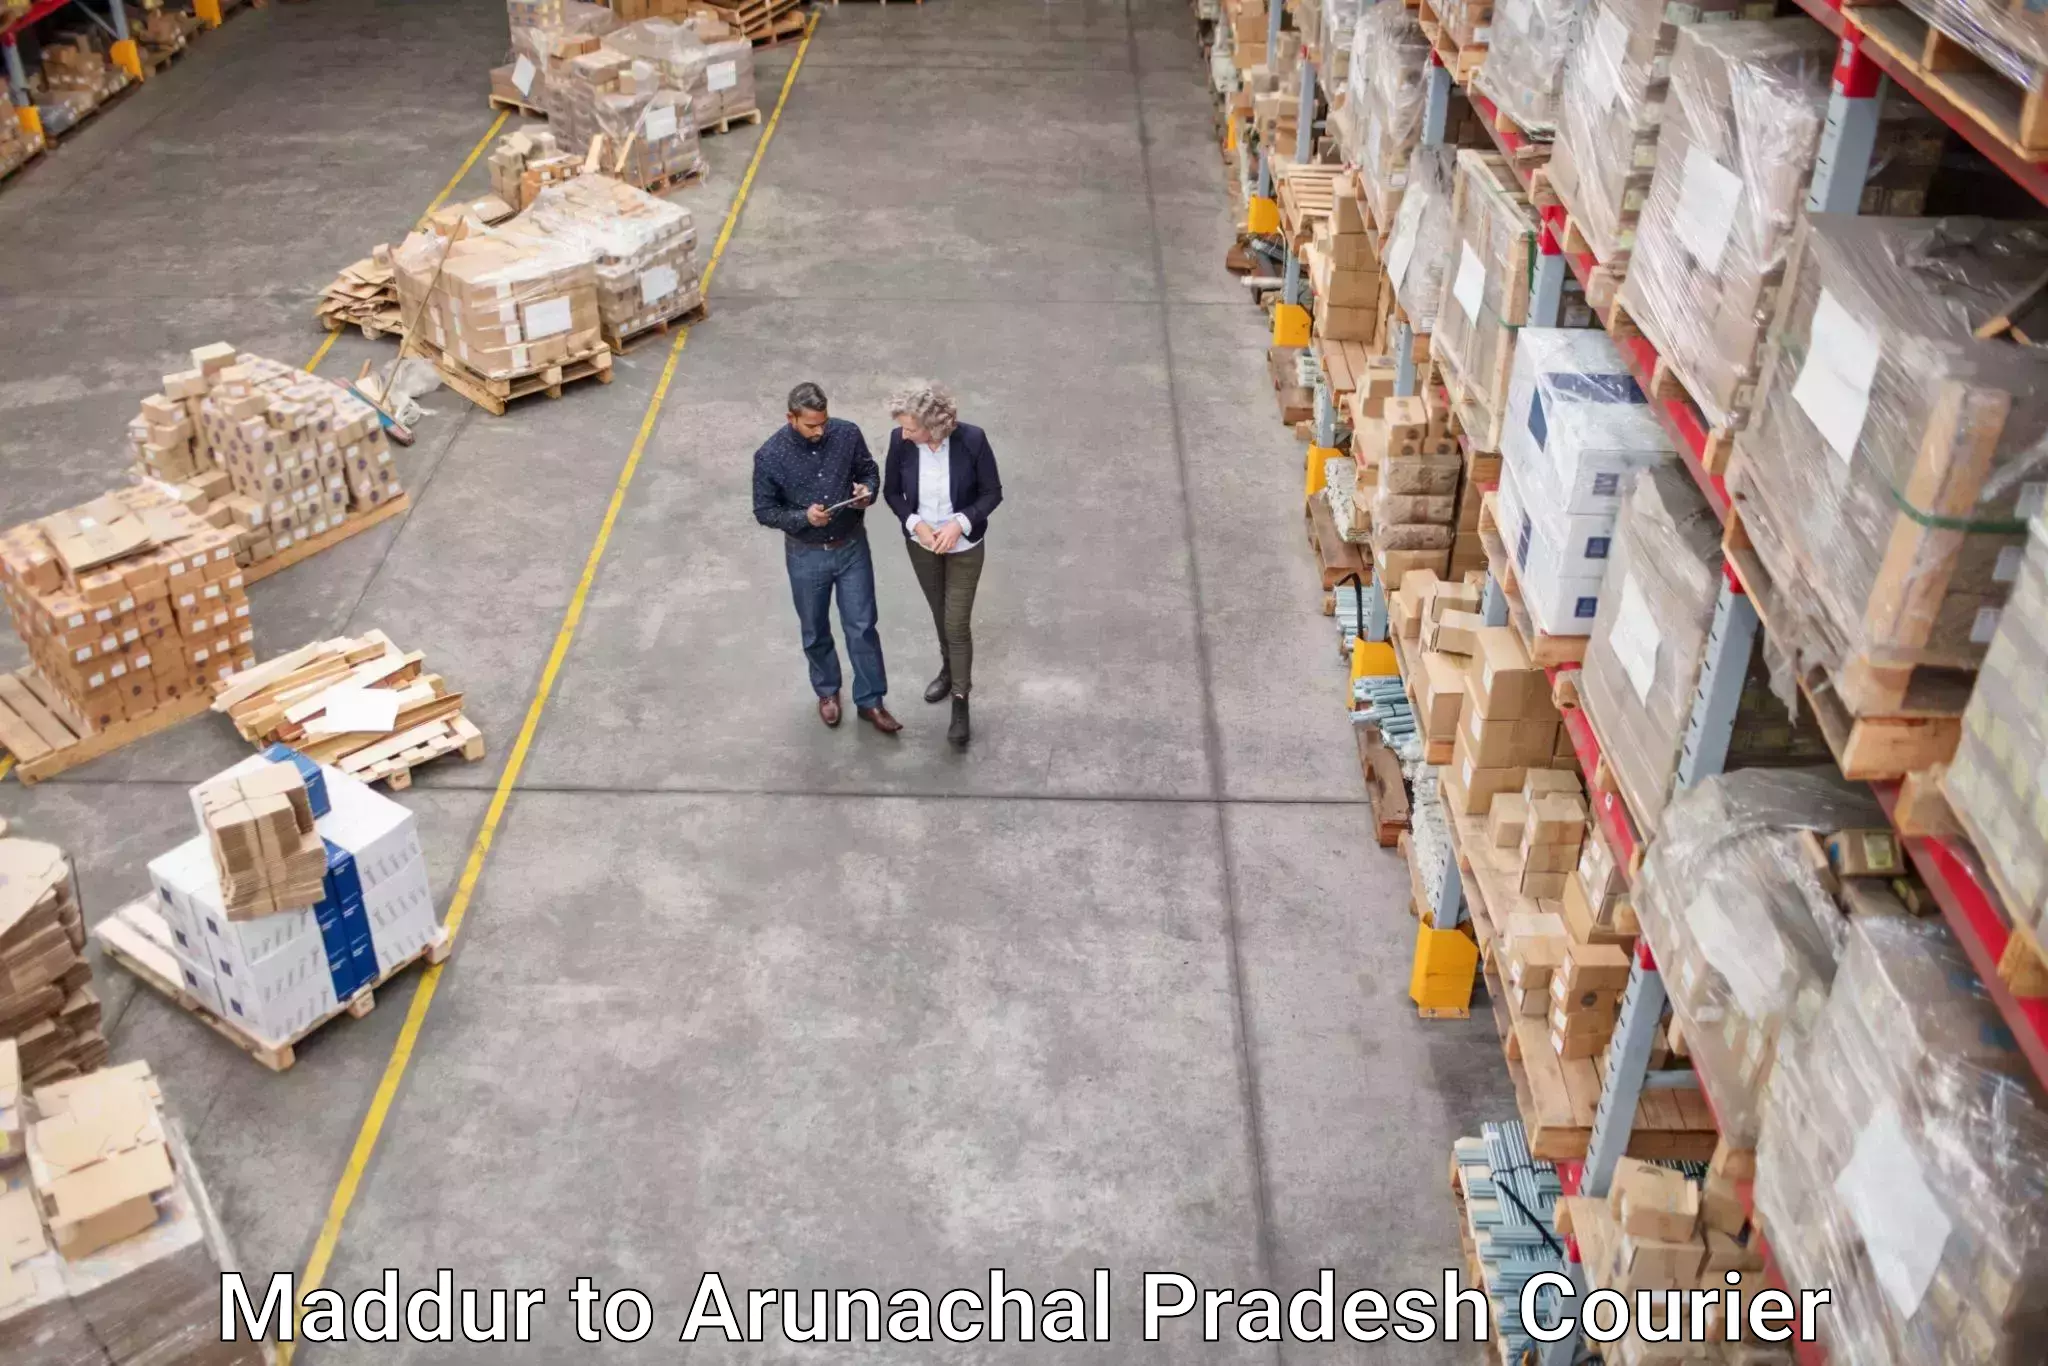 Business delivery service Maddur to Arunachal Pradesh